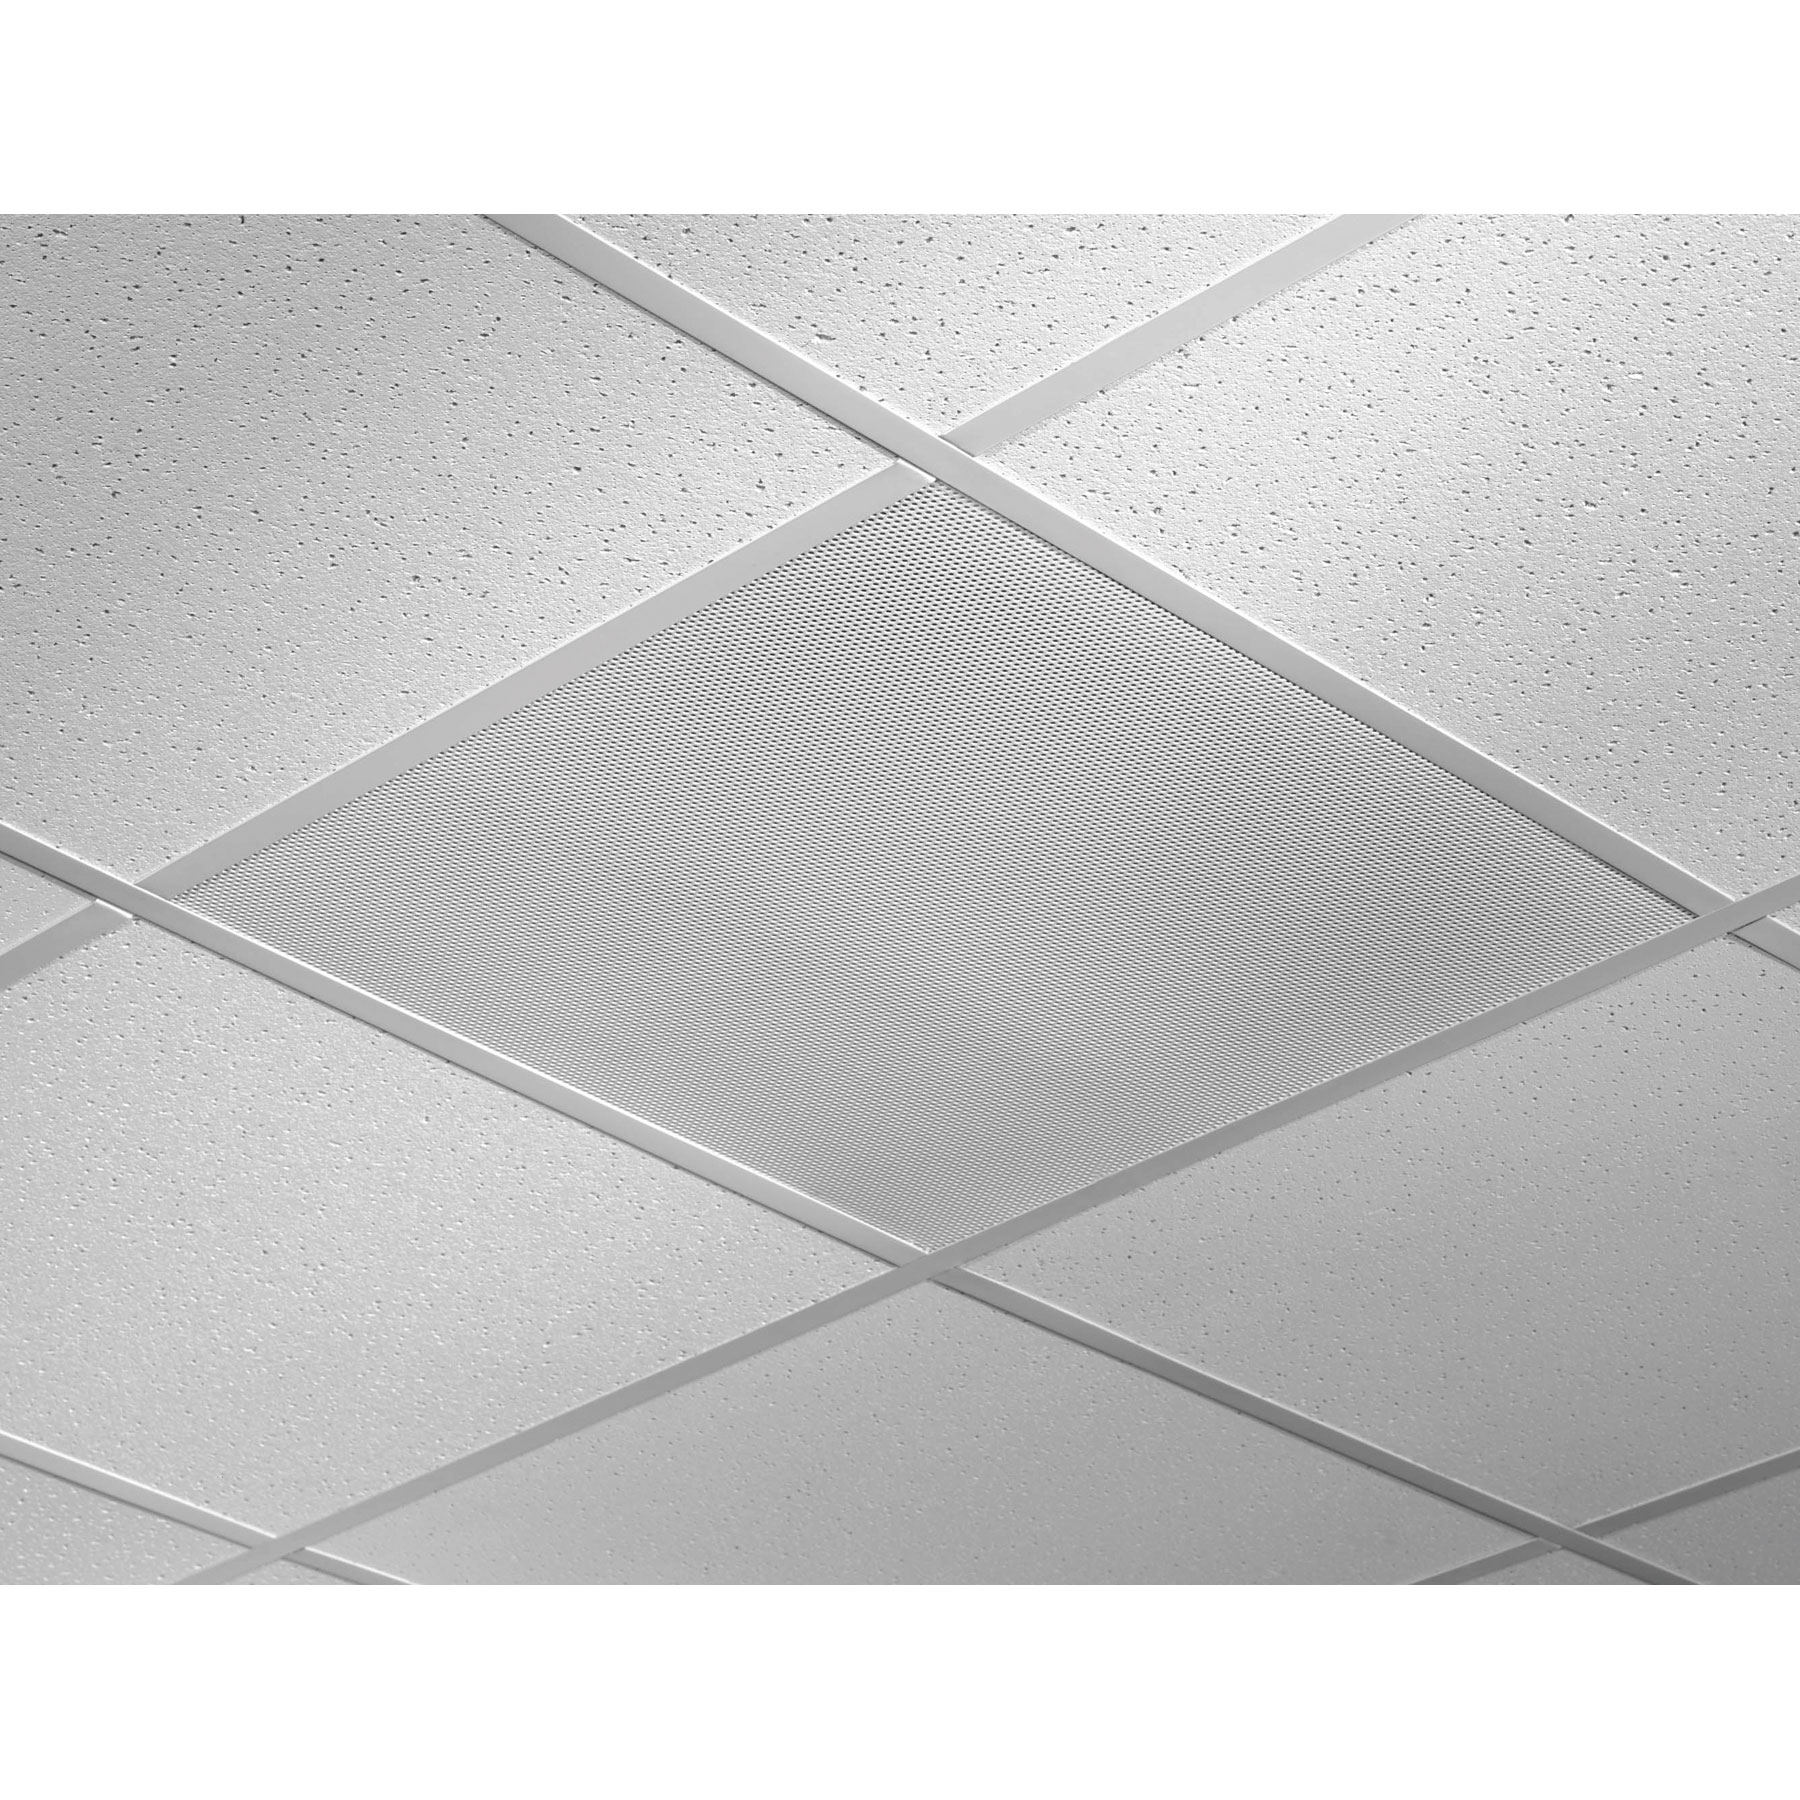 Ceiling Tile Speakers 2×2